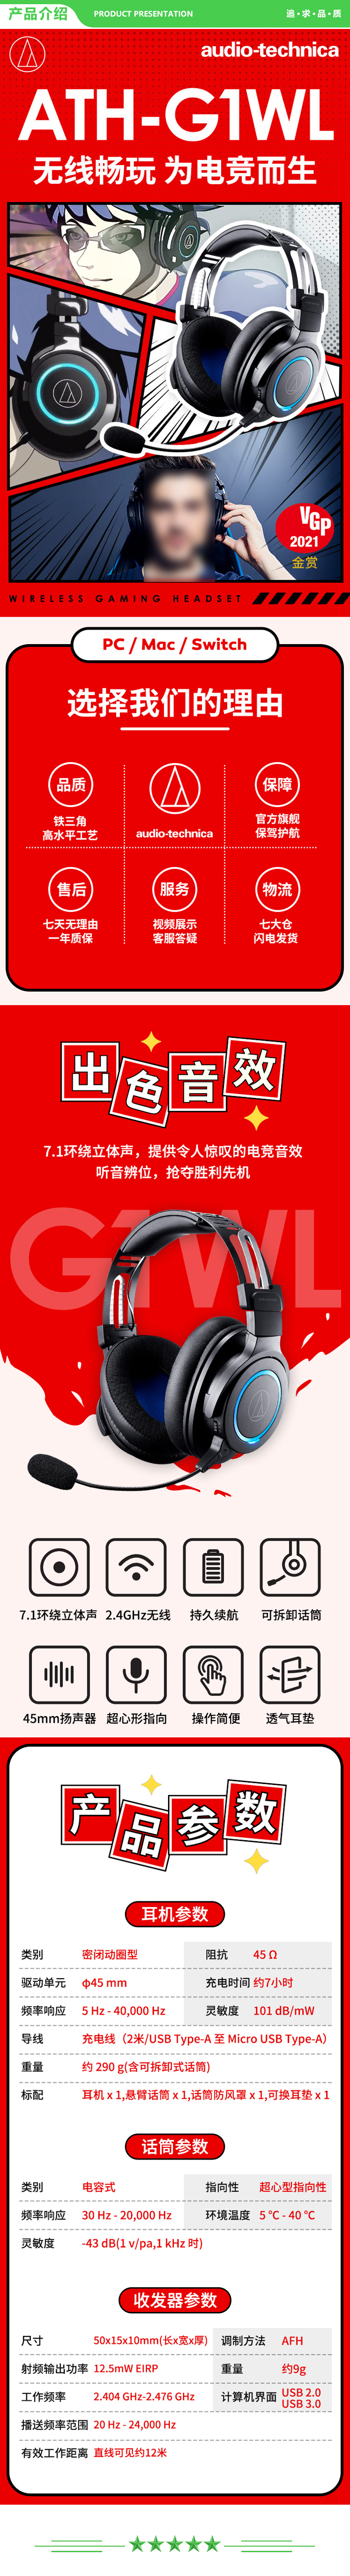 铁三角 Audio-technica ATH-G1WL头戴式耳机 专业游戏无线耳麦 多功能音乐耳机 黑色 .jpg